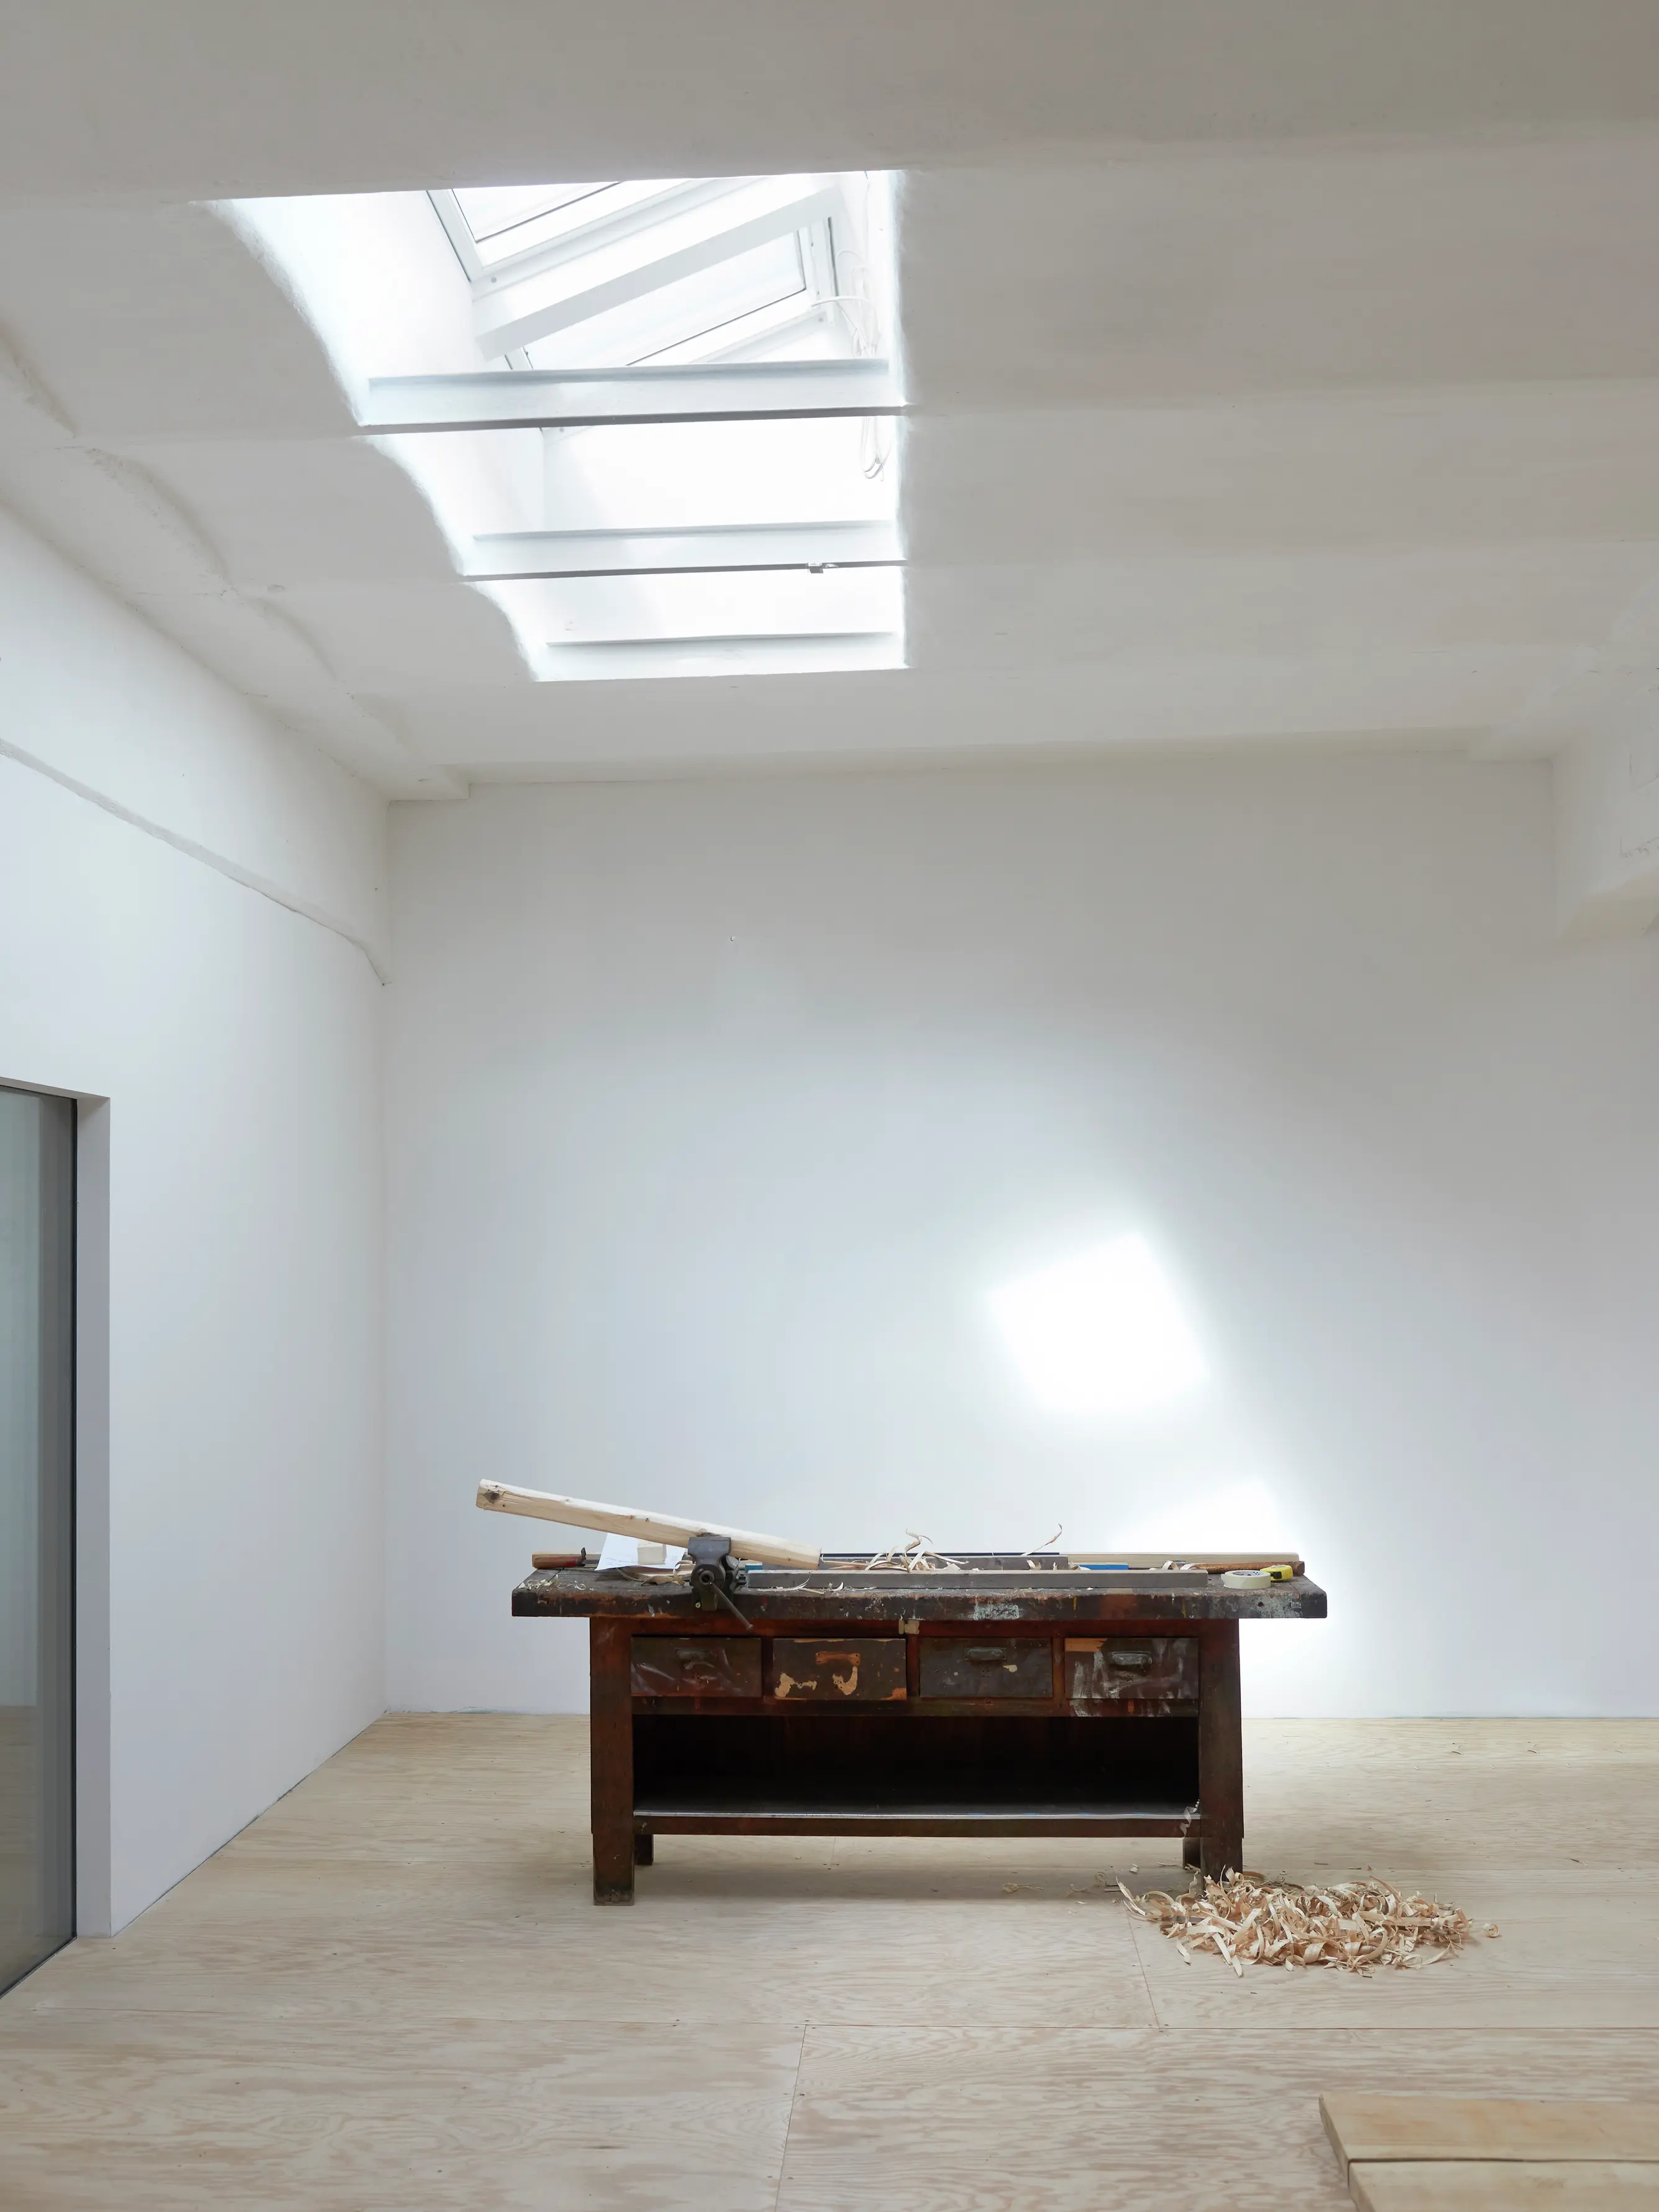 Officina con finestre per tetti VELUX che forniscono luce naturale sopra un banco da lavoro.